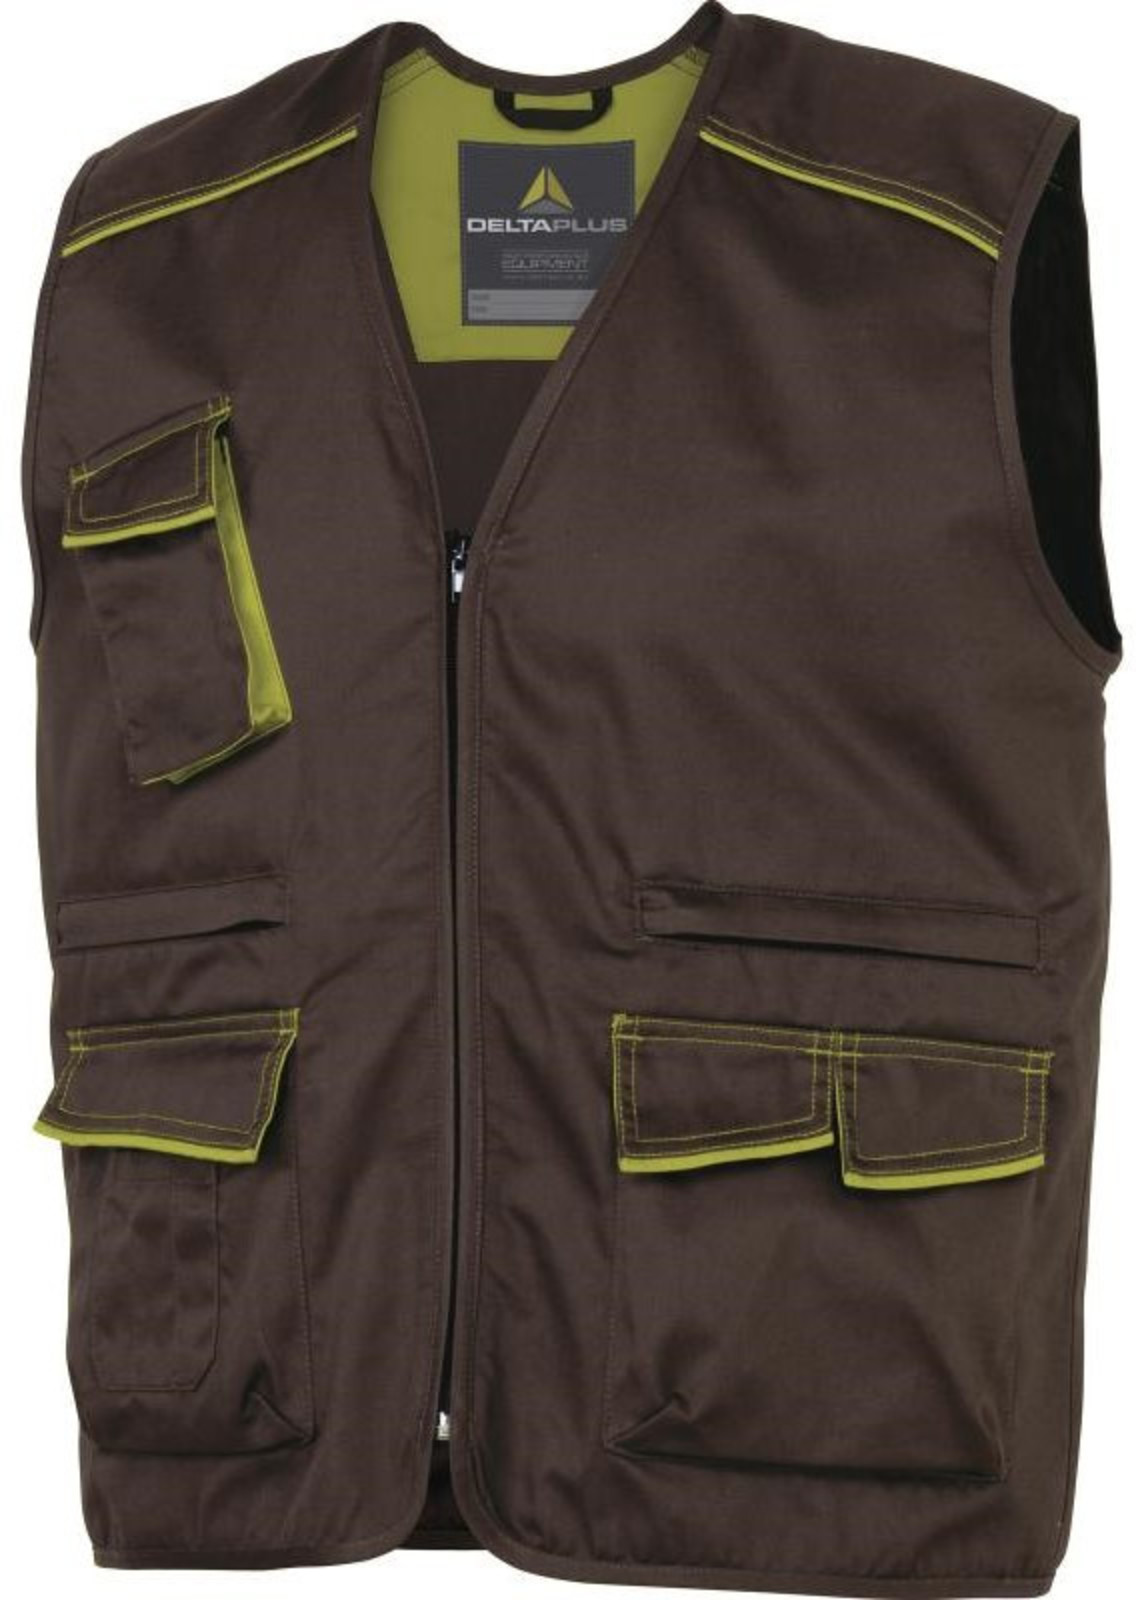 Pracovná vesta Delta Plus Panostyle M6gil  - veľkosť: L, farba: hnedá/zelená